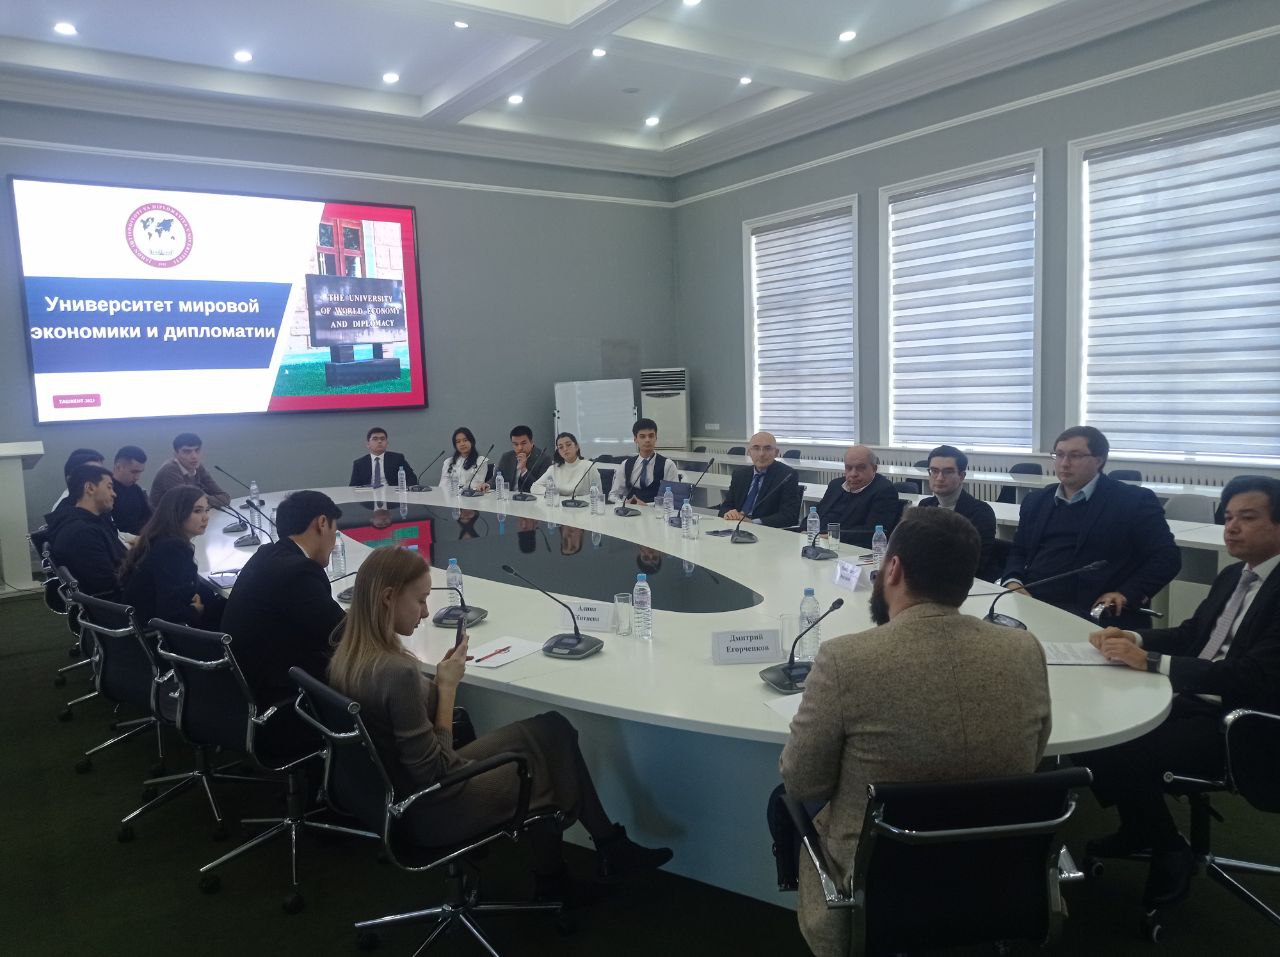 В Университете мировой экономики и дипломатии состоялась встреча с группой ученых Российской Федерации